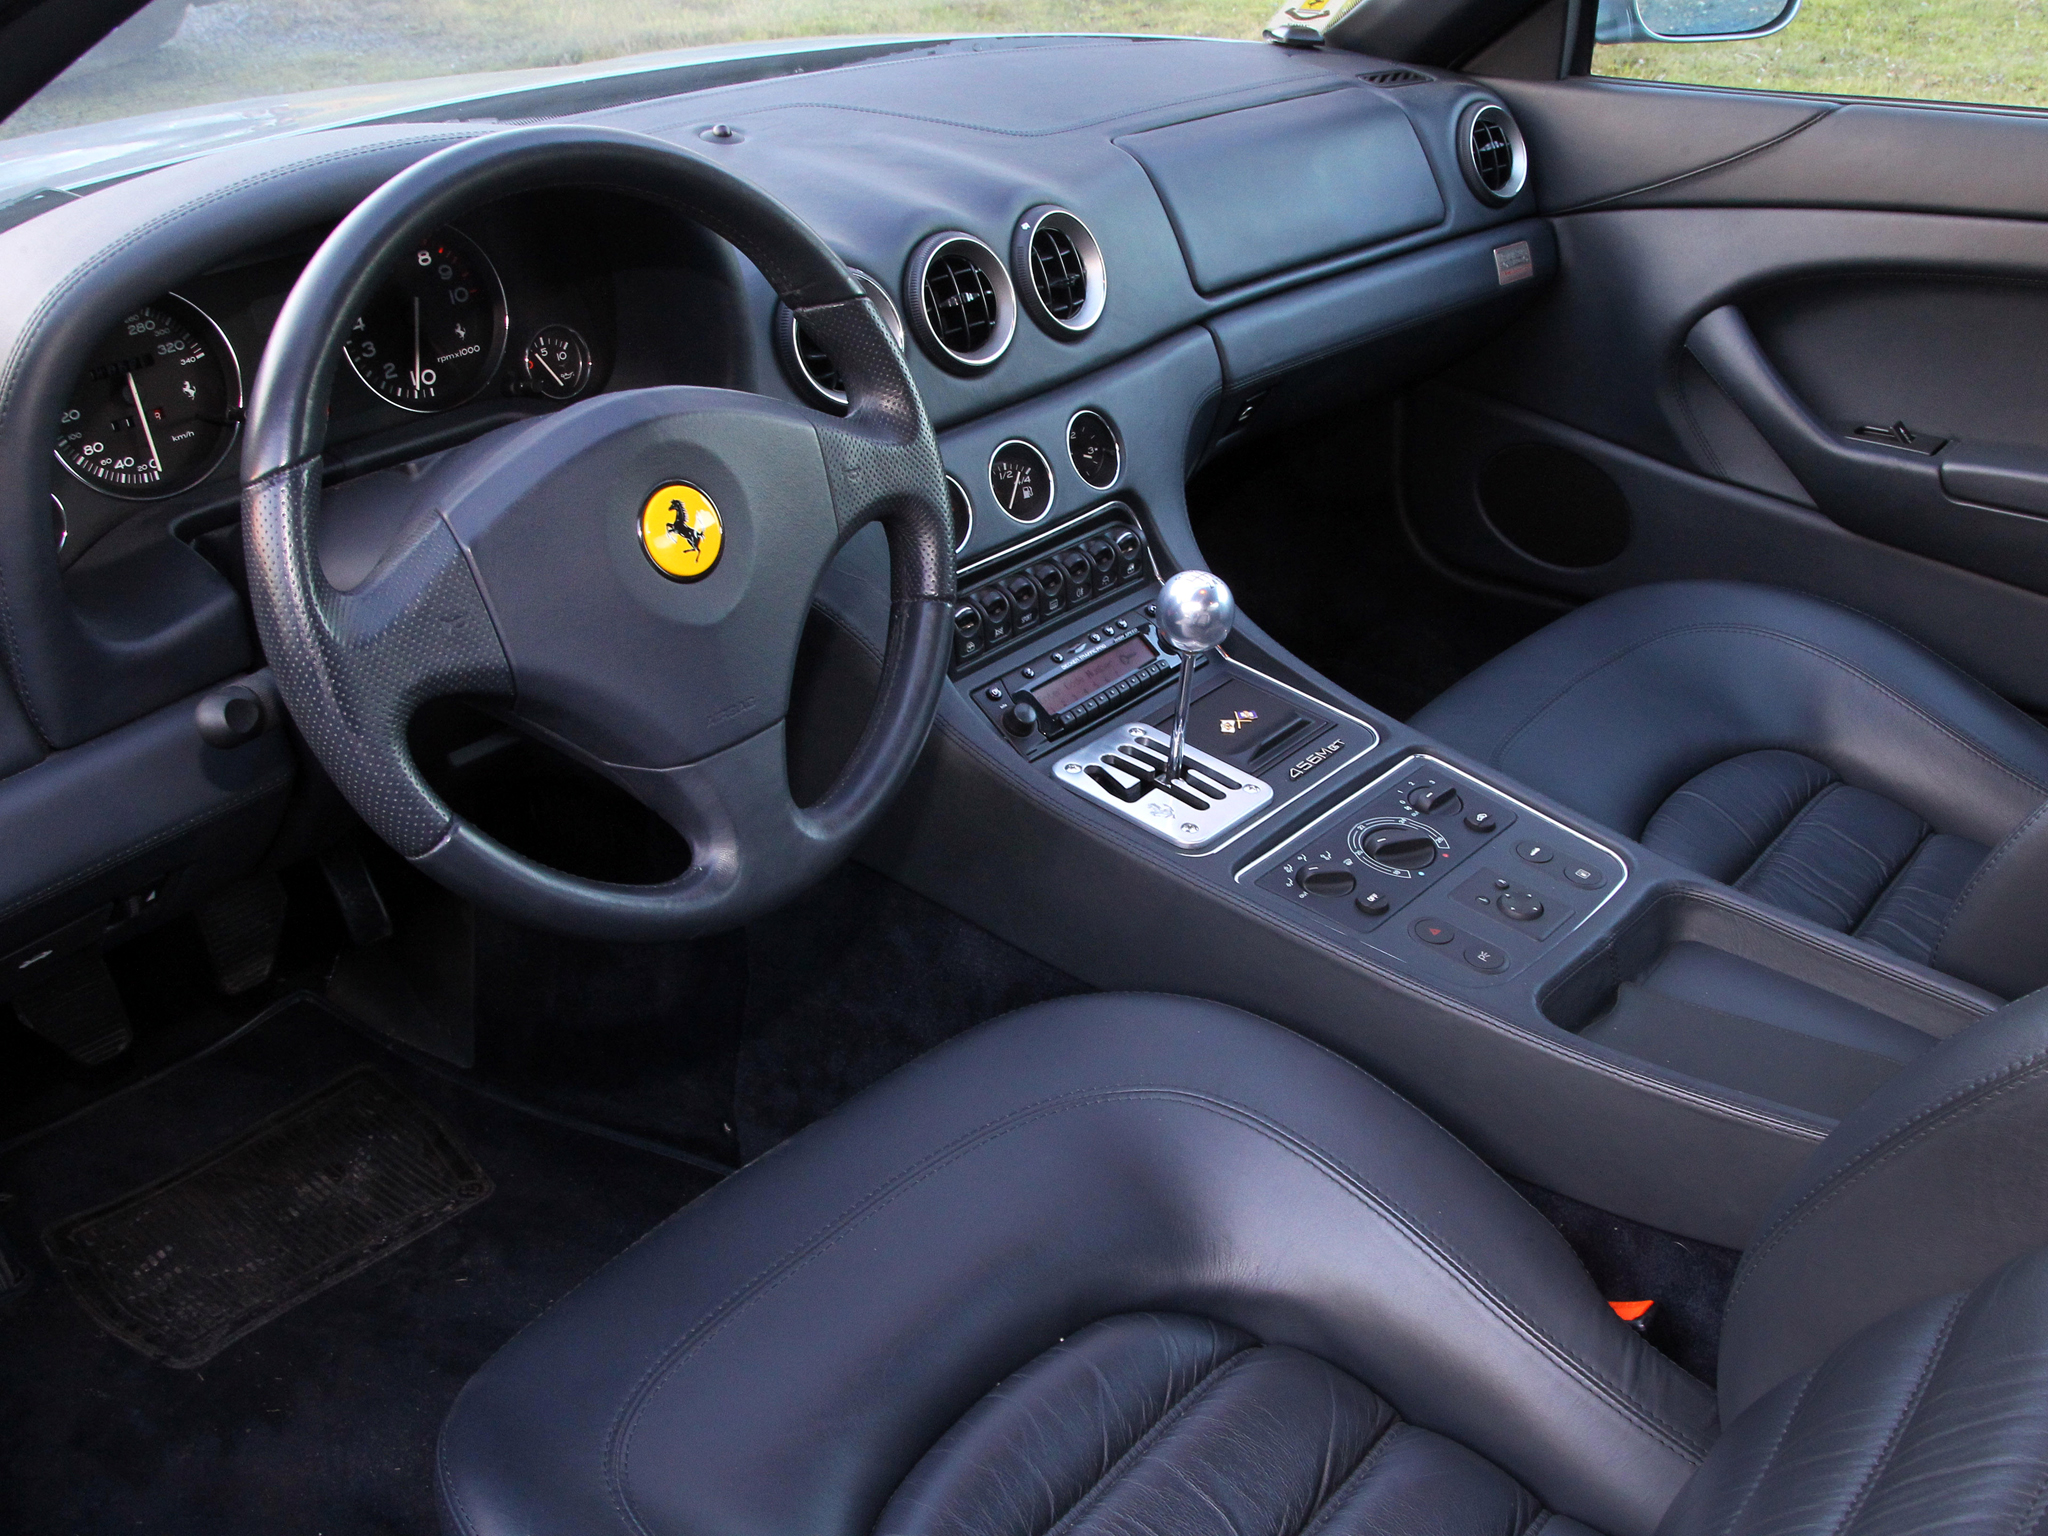 1998 03, Ferrari, 456, M, G t, Supercar, 1998, 2003, Interior Wallpaper